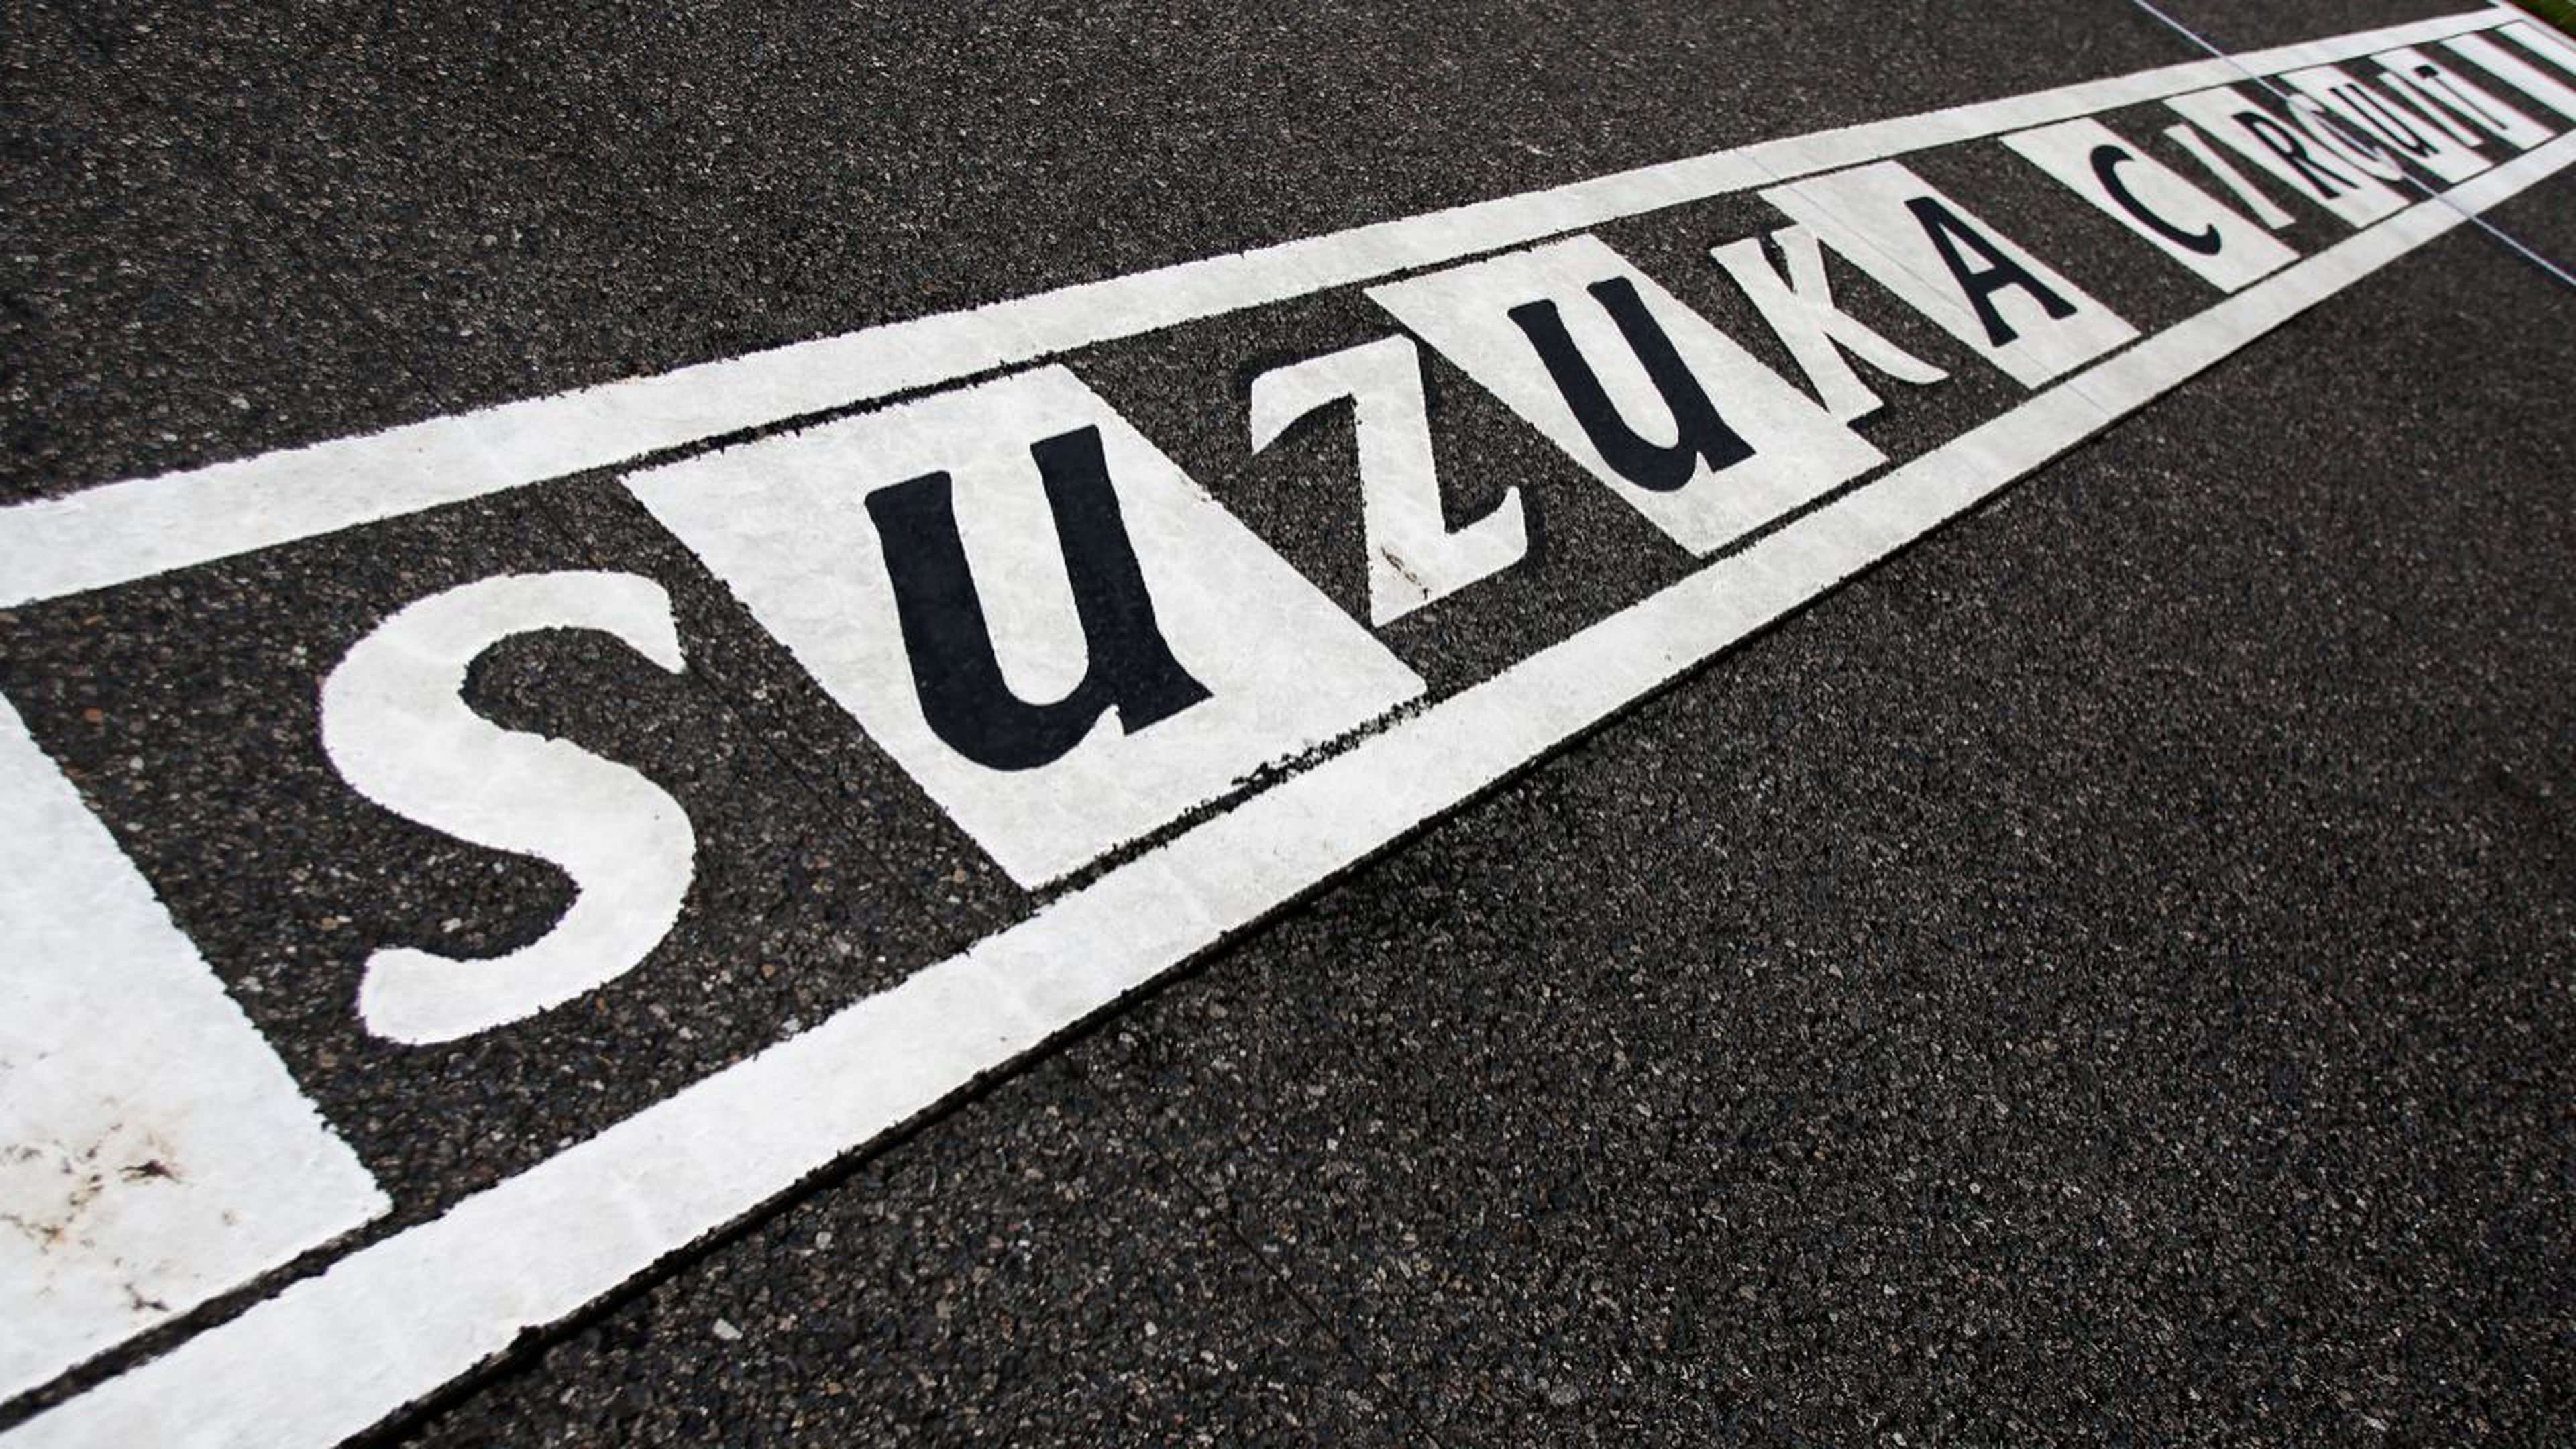 Circuito de Suzuka